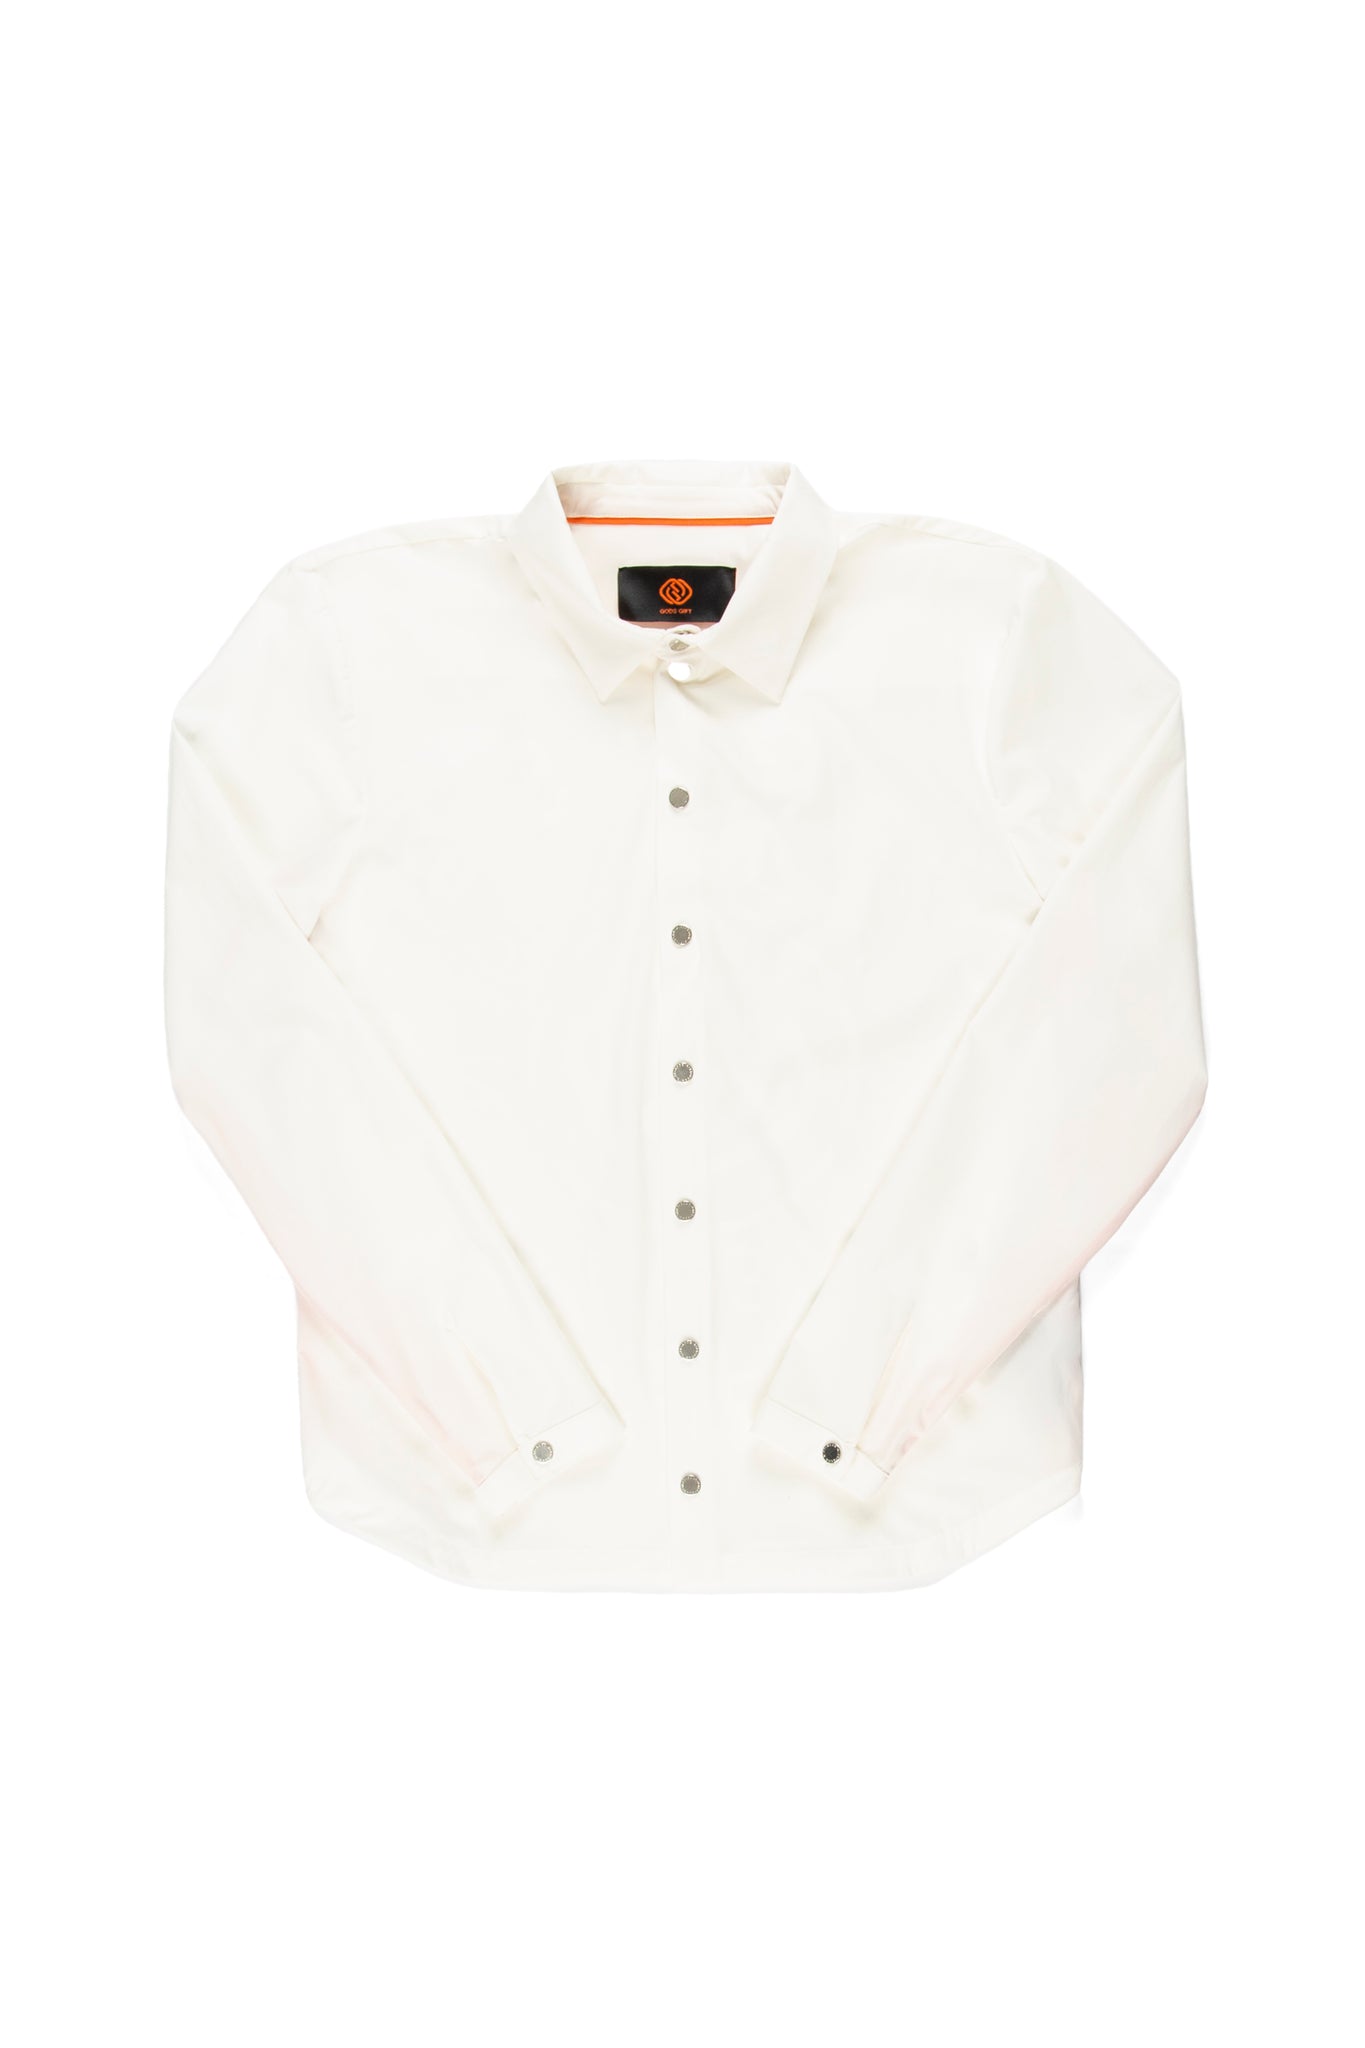 Bari Stacked Shirt in White